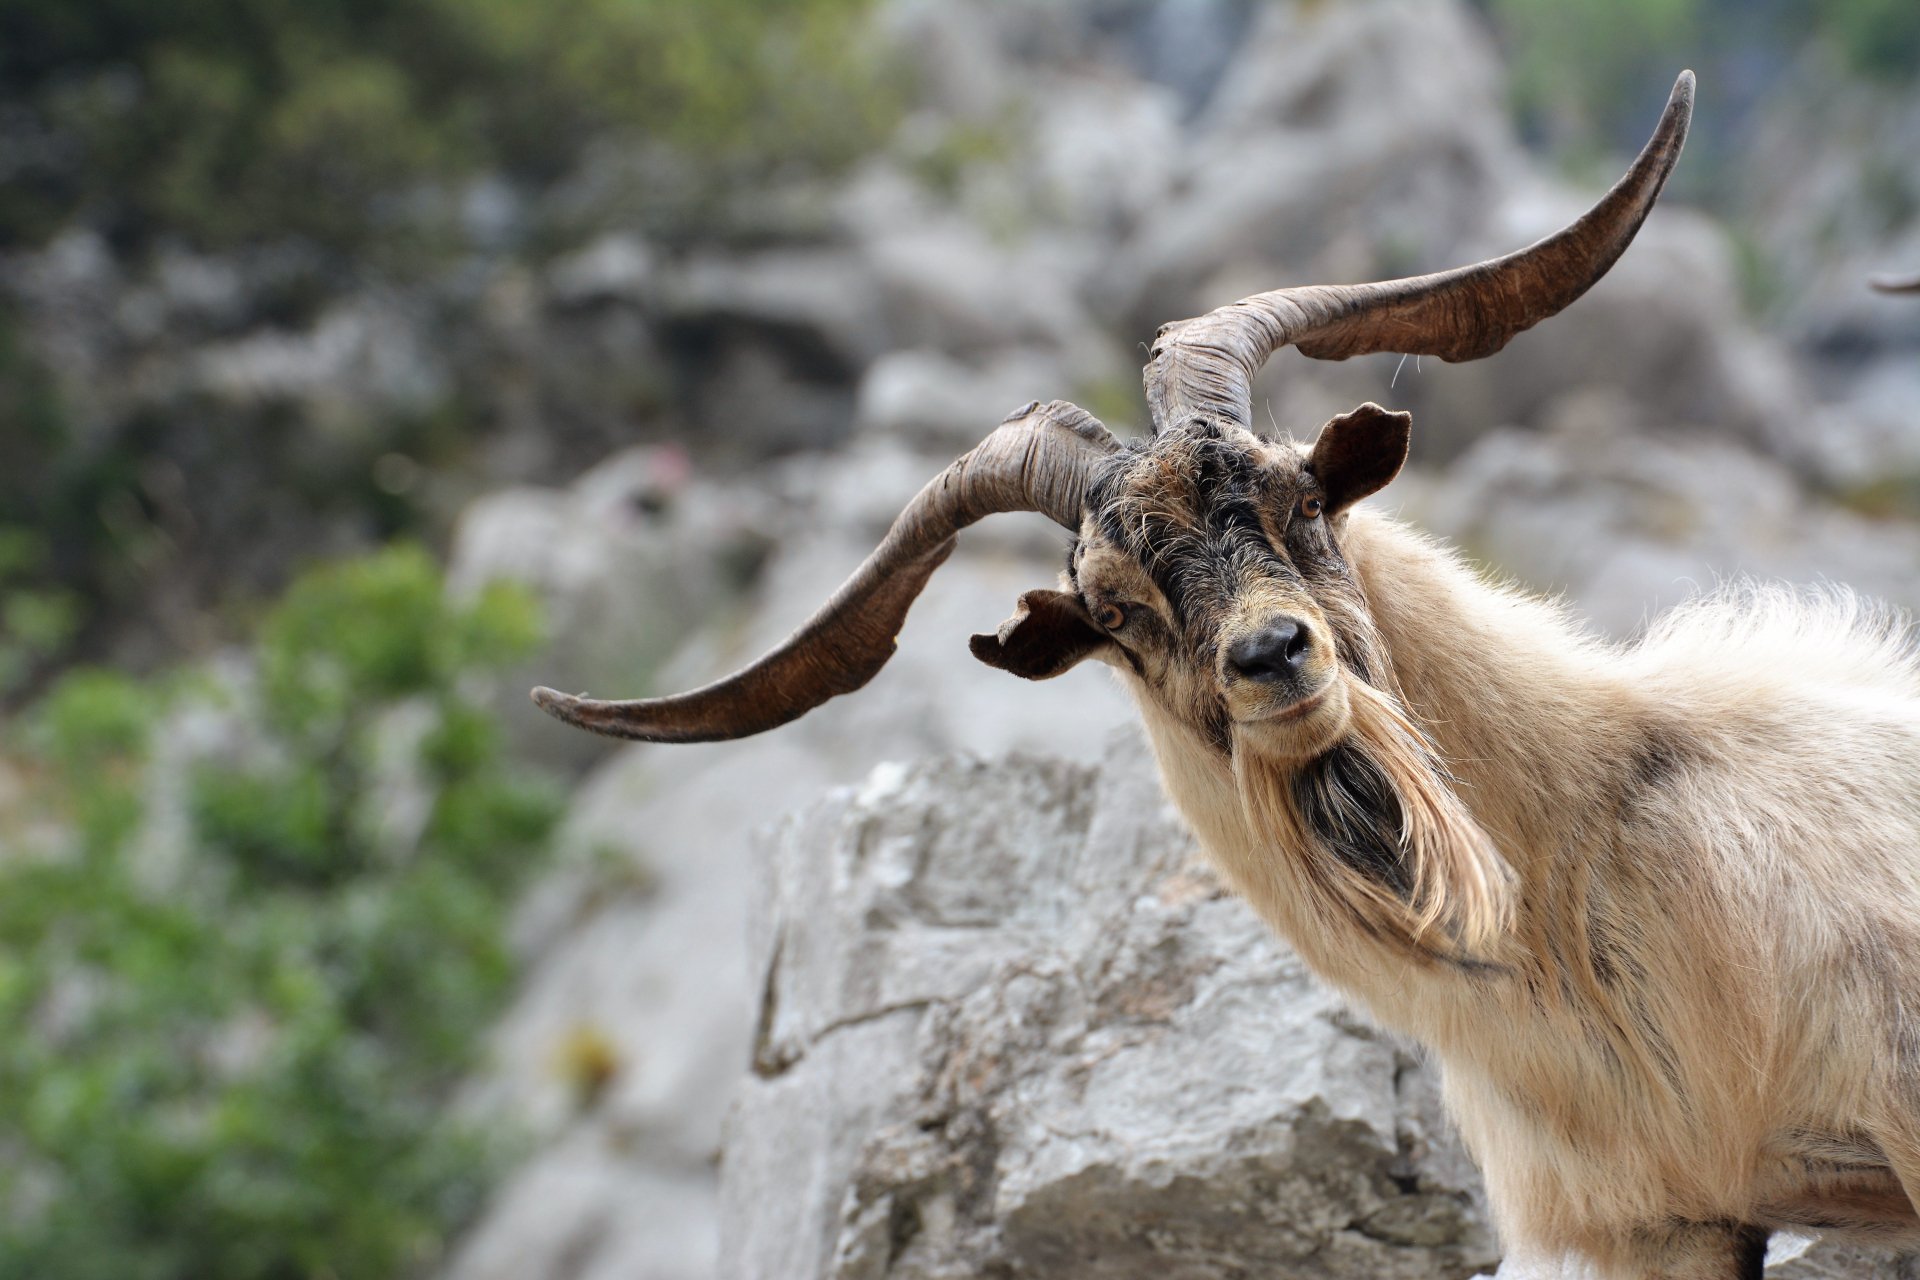 12847 Goat Wallpaper Images Stock Photos  Vectors  Shutterstock